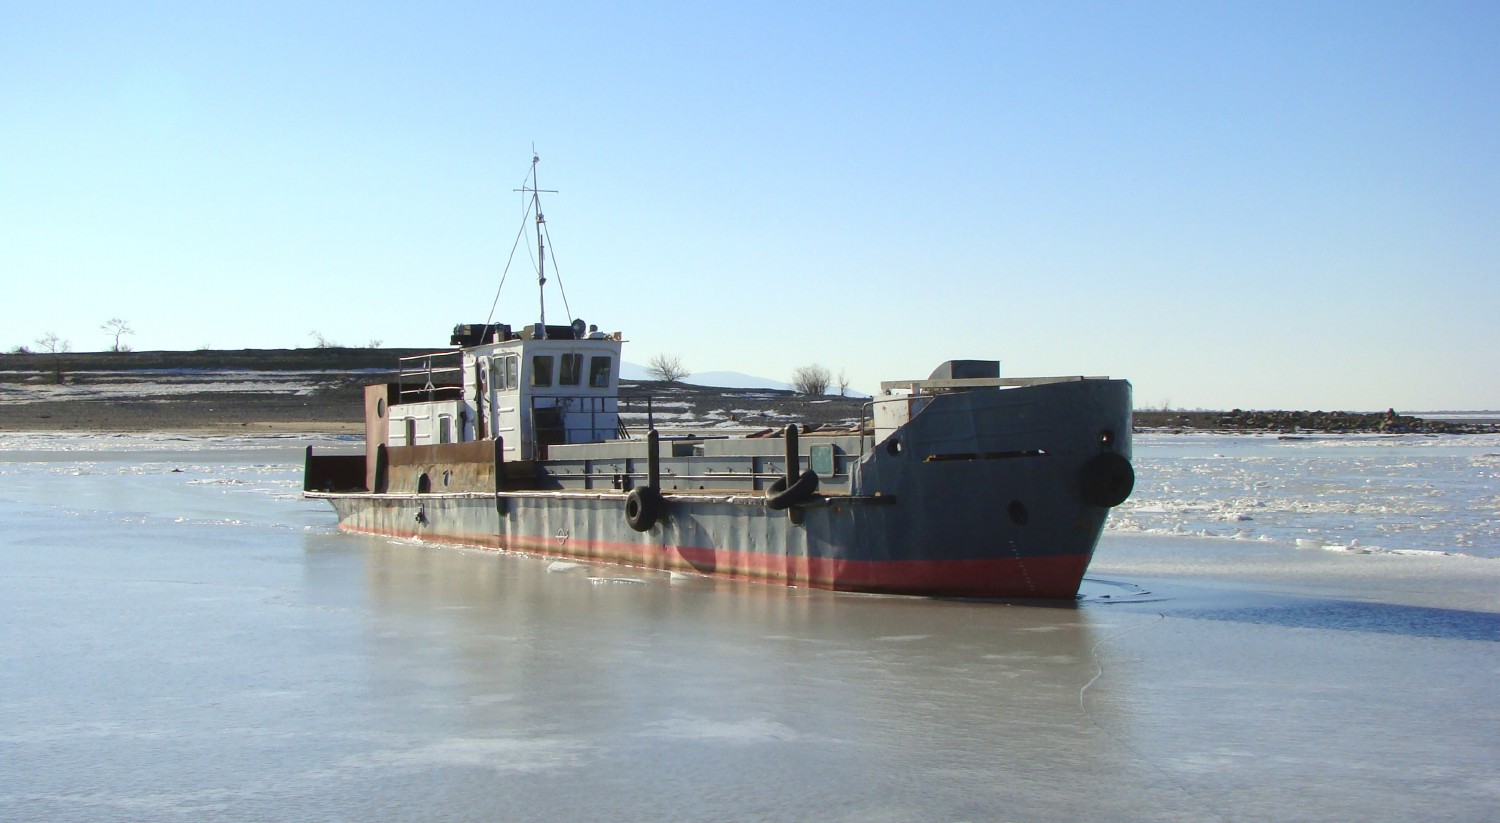 Неопознанное судно - тип Кижи. Russia - Amur Basin